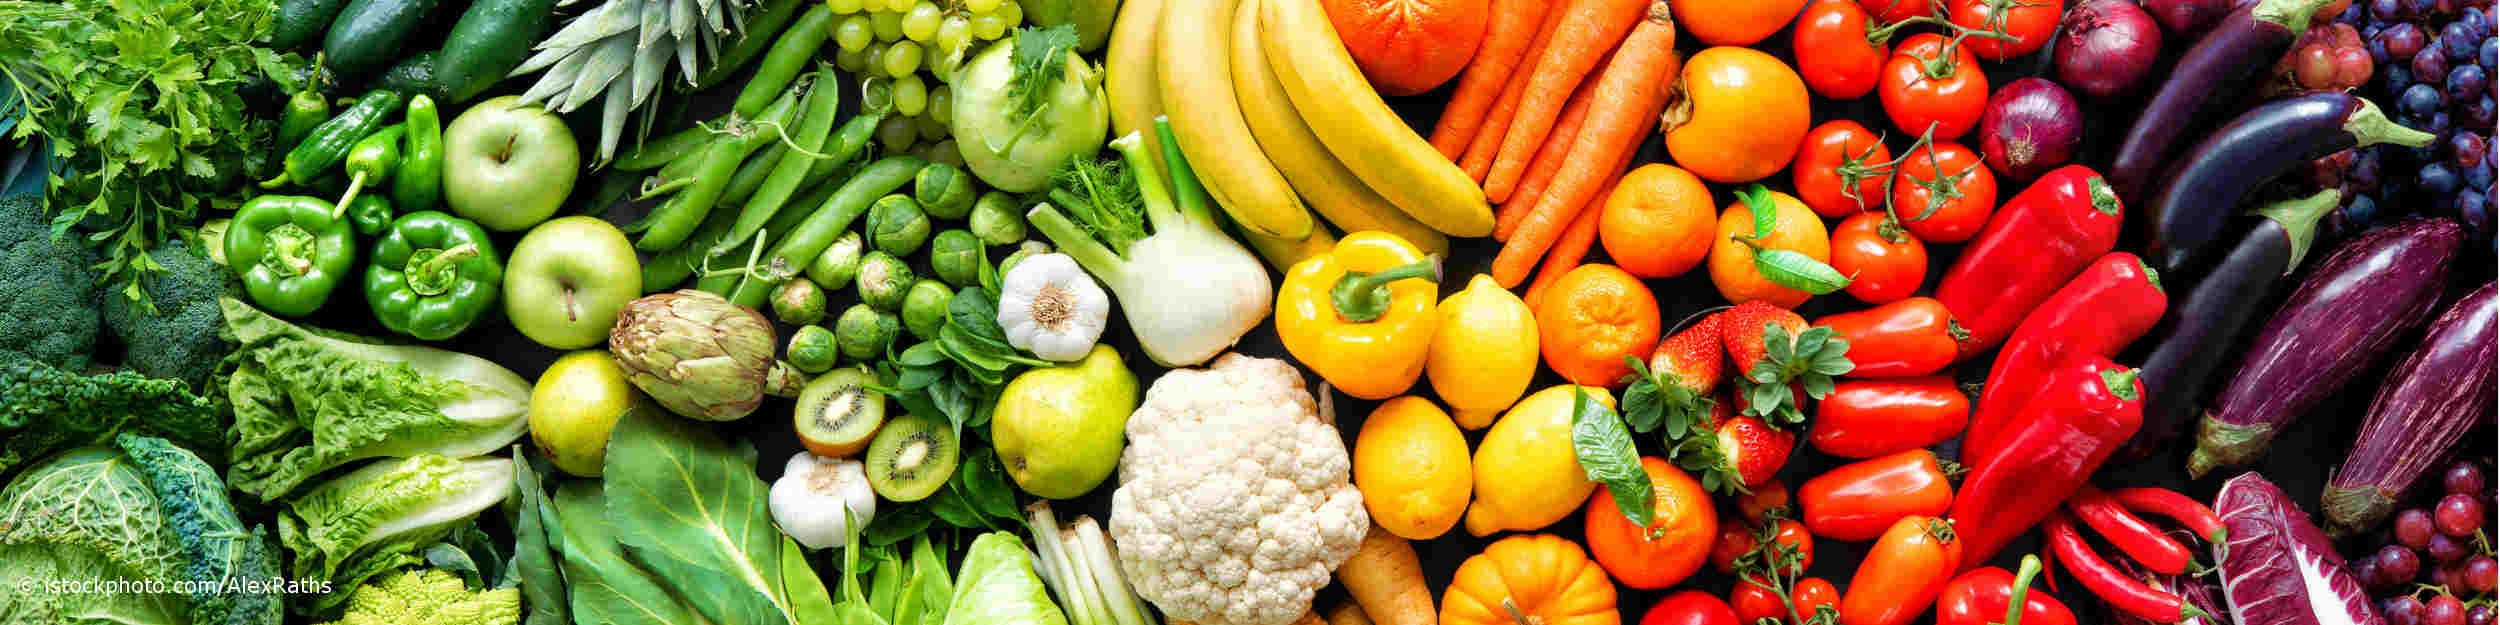 Frisches Obst und Gemüse enthält sekundäre Pflanzenstoffe.